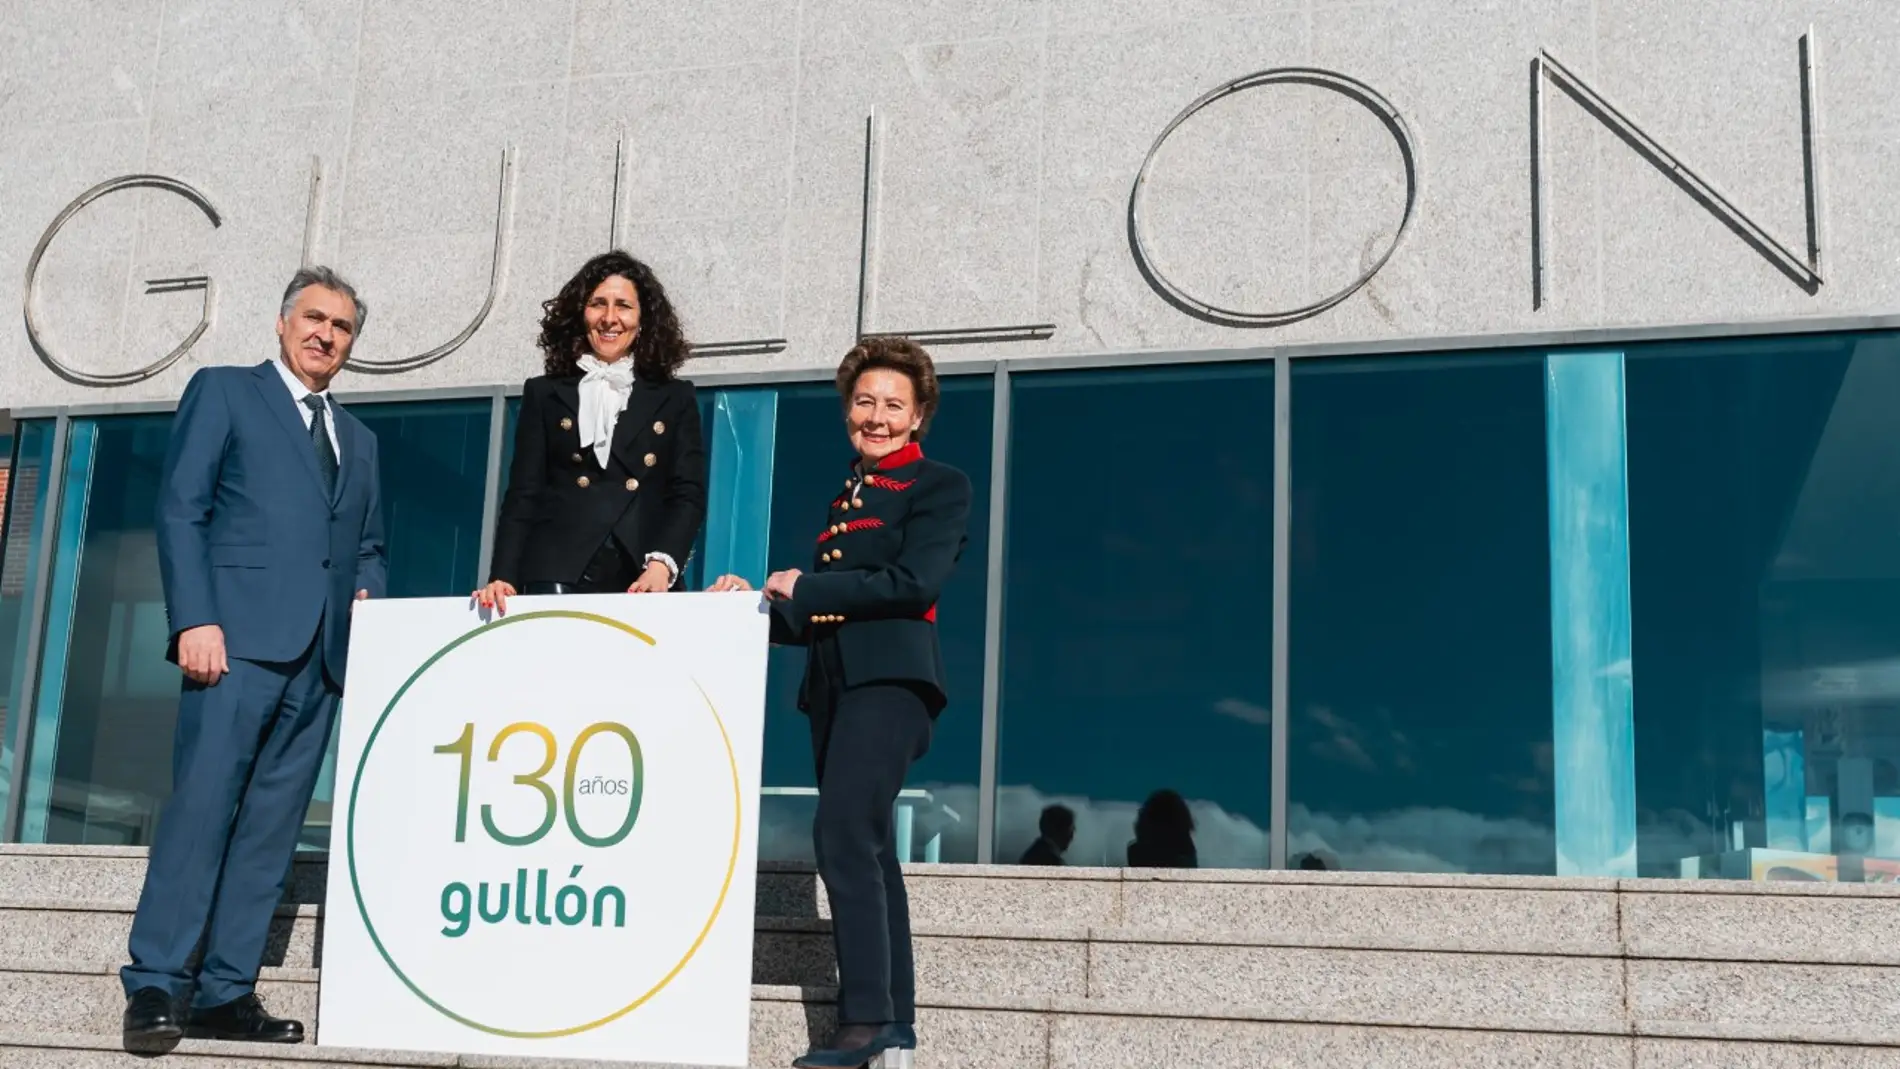 Galletas Gullón celebra su 130 aniversario en 2022 con un sólido liderazgo en el sector